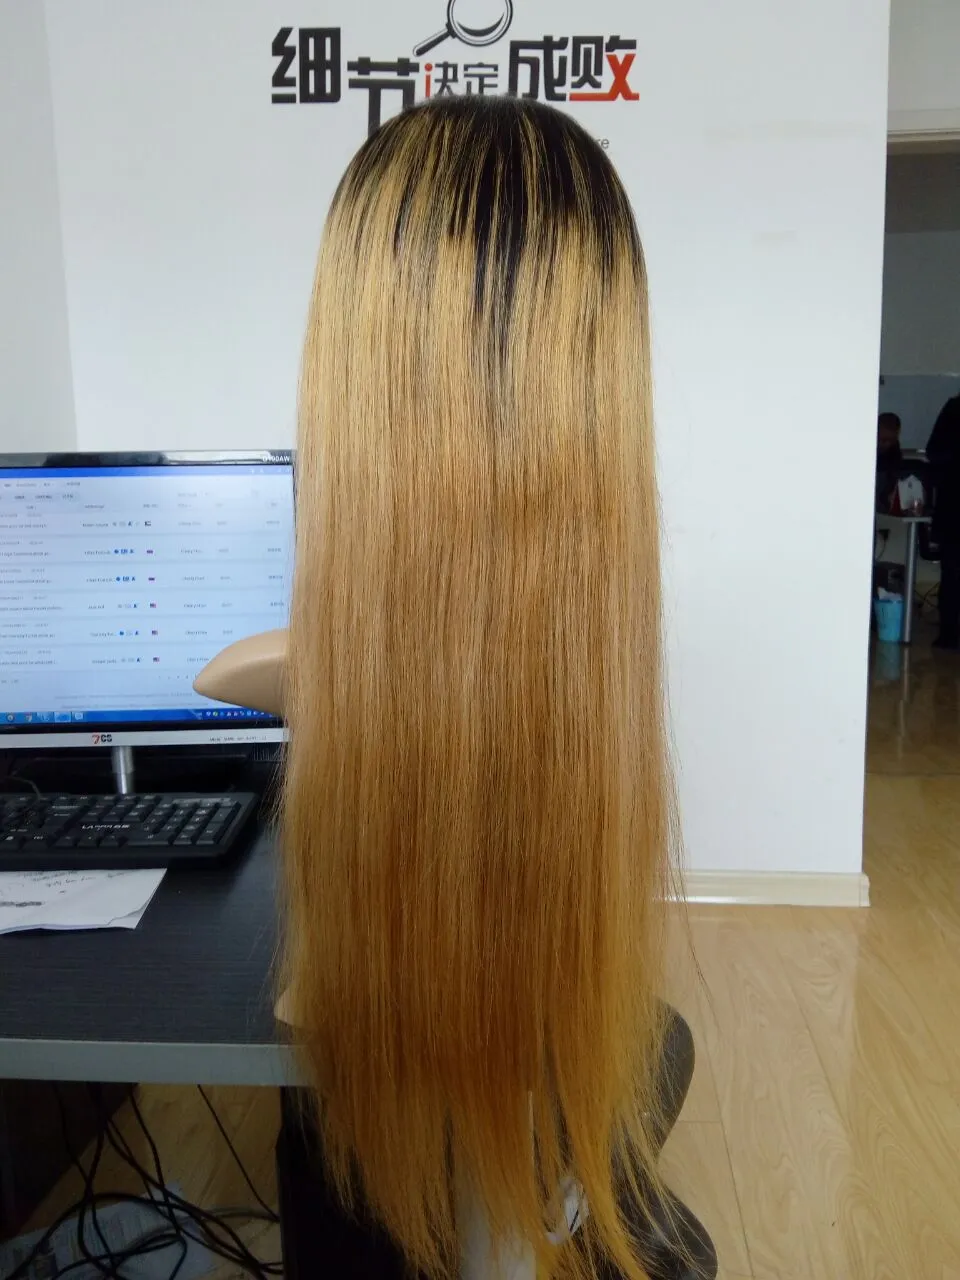 Ombre 1b/27 # couleur brésilienne cheveux humains avant dentelle perruque soyeuse droite deux tons sans colle perruques 180% densité